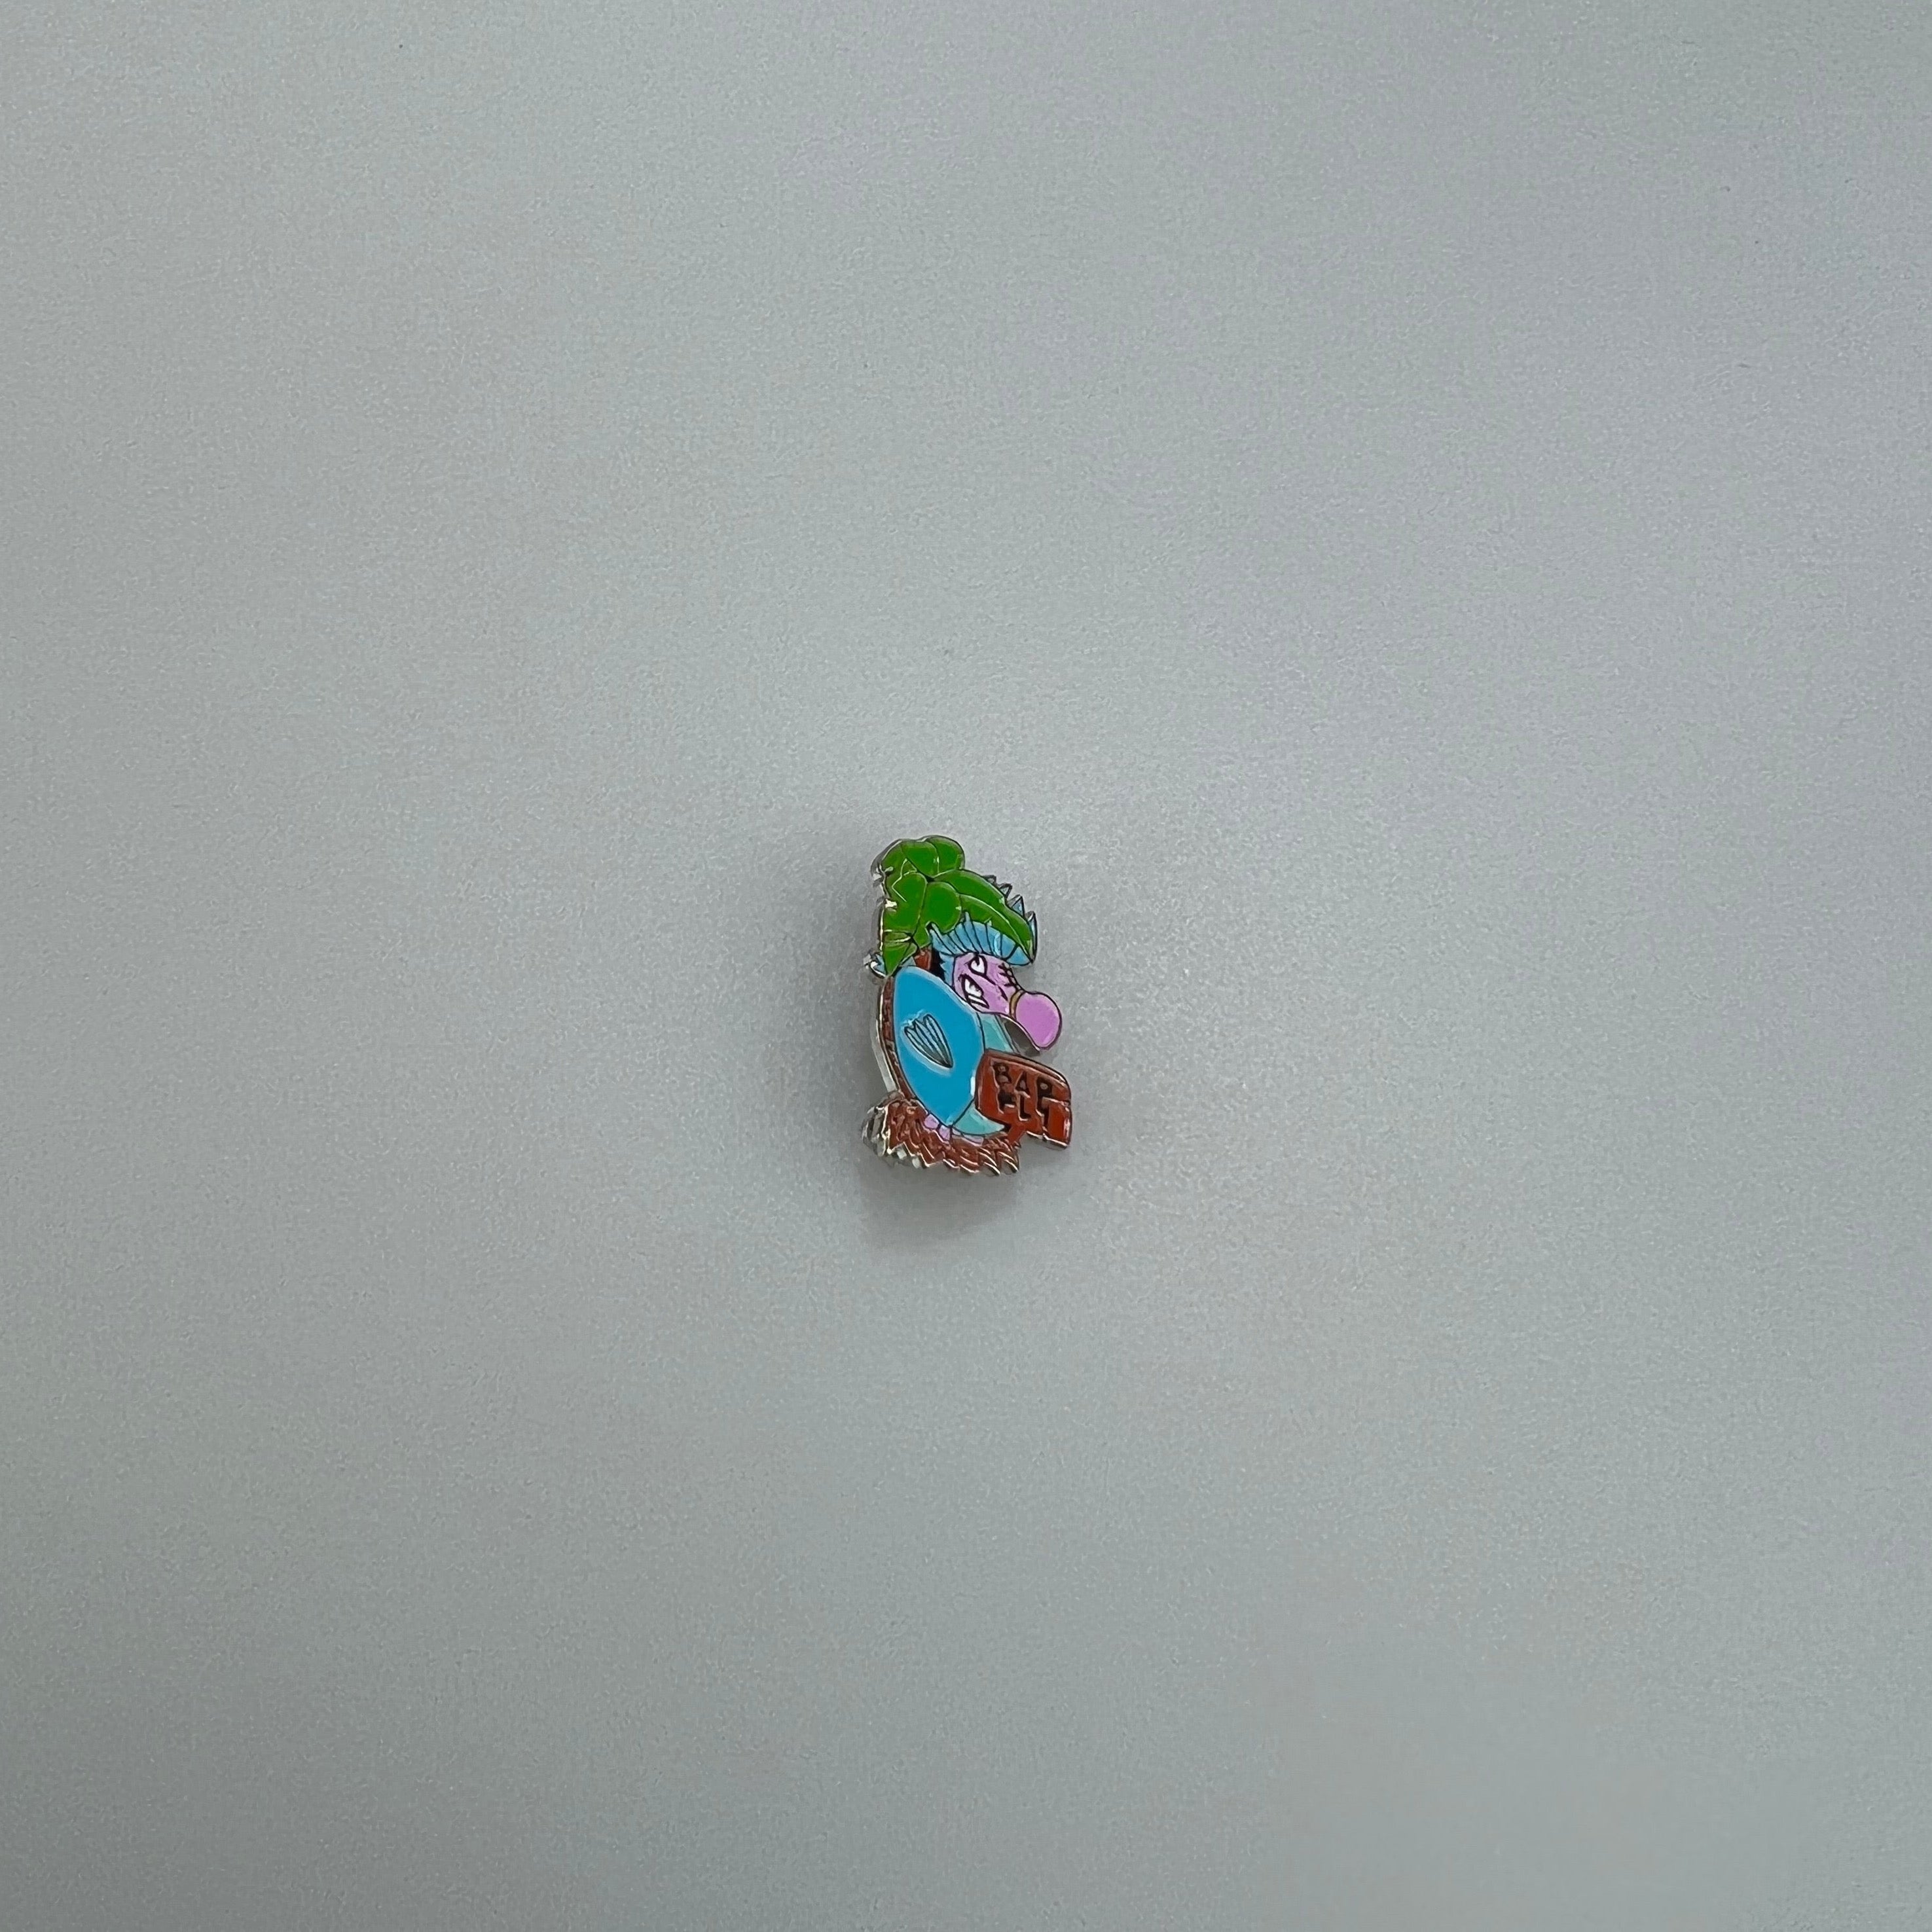 Mr Skittles BAR FLY Badge - enamel pin badge